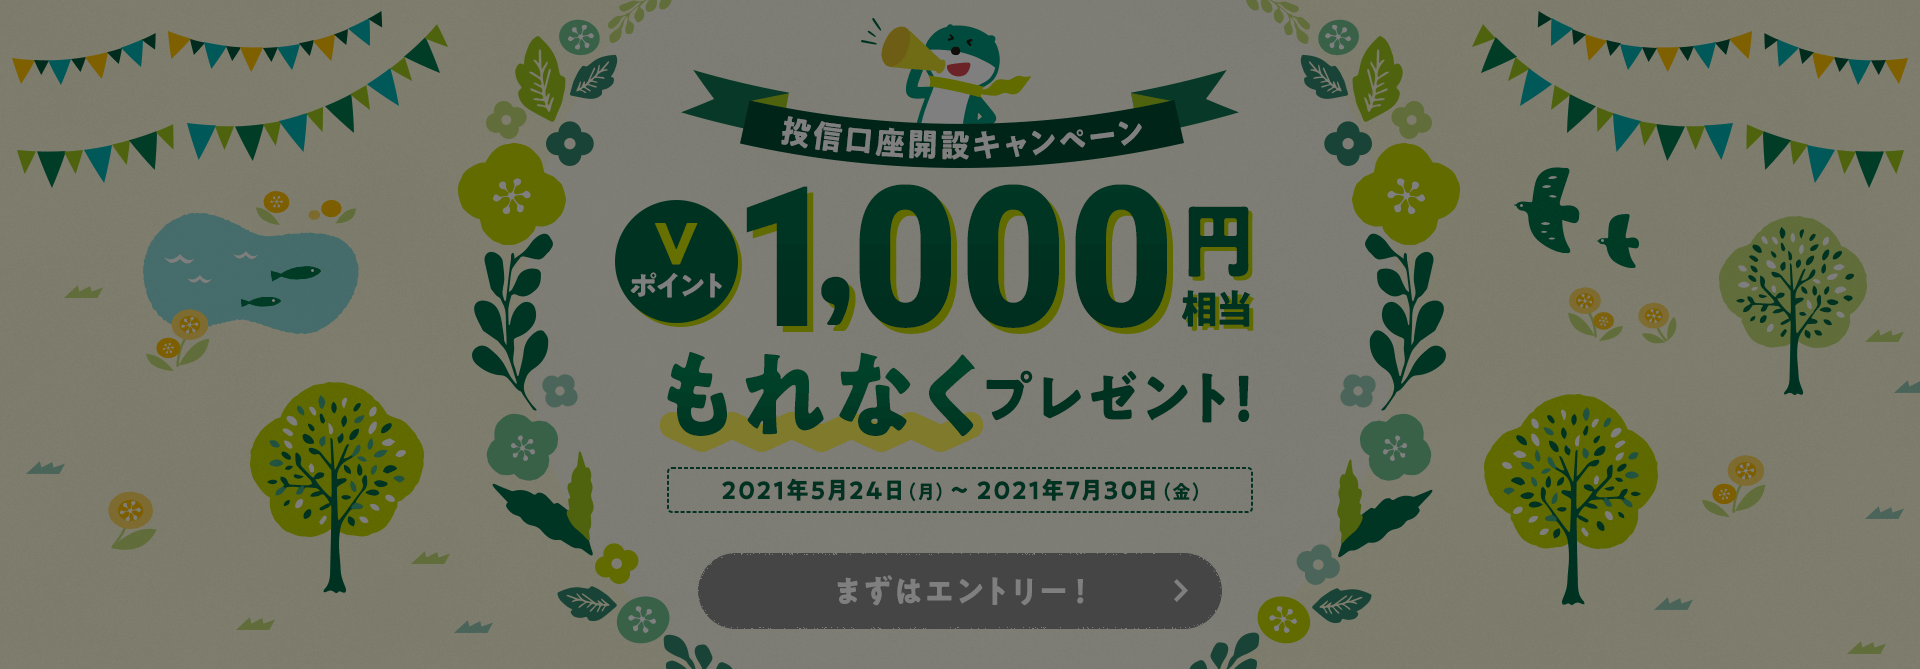 投信口座開設キャンペーン Ｖポイント1,000円相当もれなくプレゼント! 2021年5月24日(月)〜2021年7月30日(金)